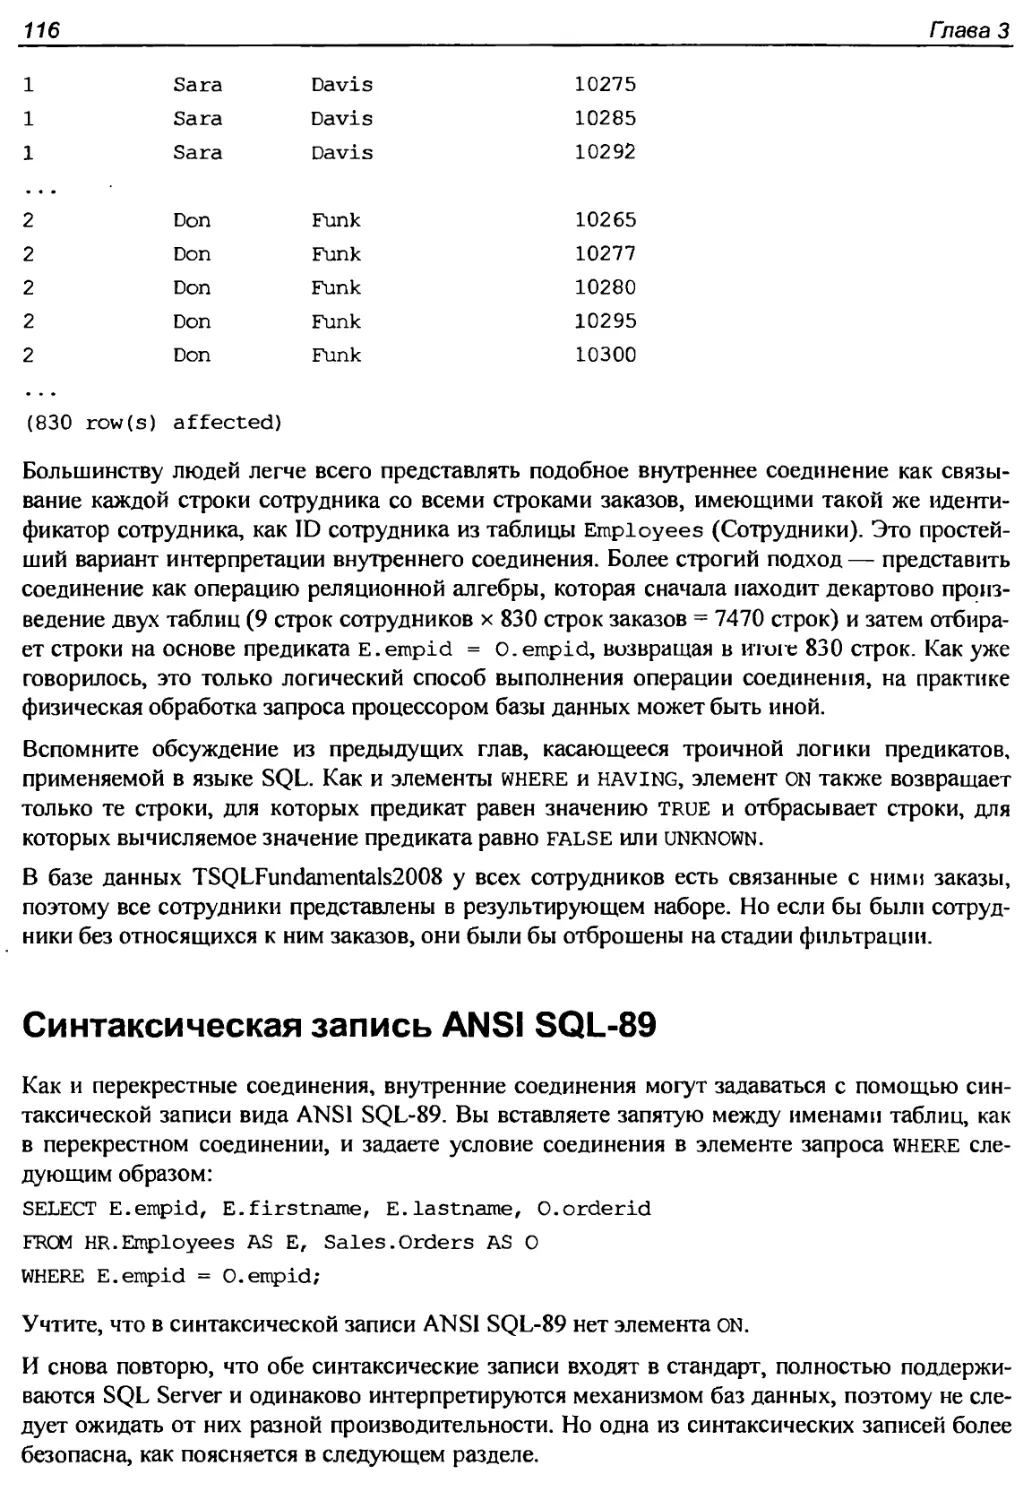 Синтаксическая запись ANSI SQL-89